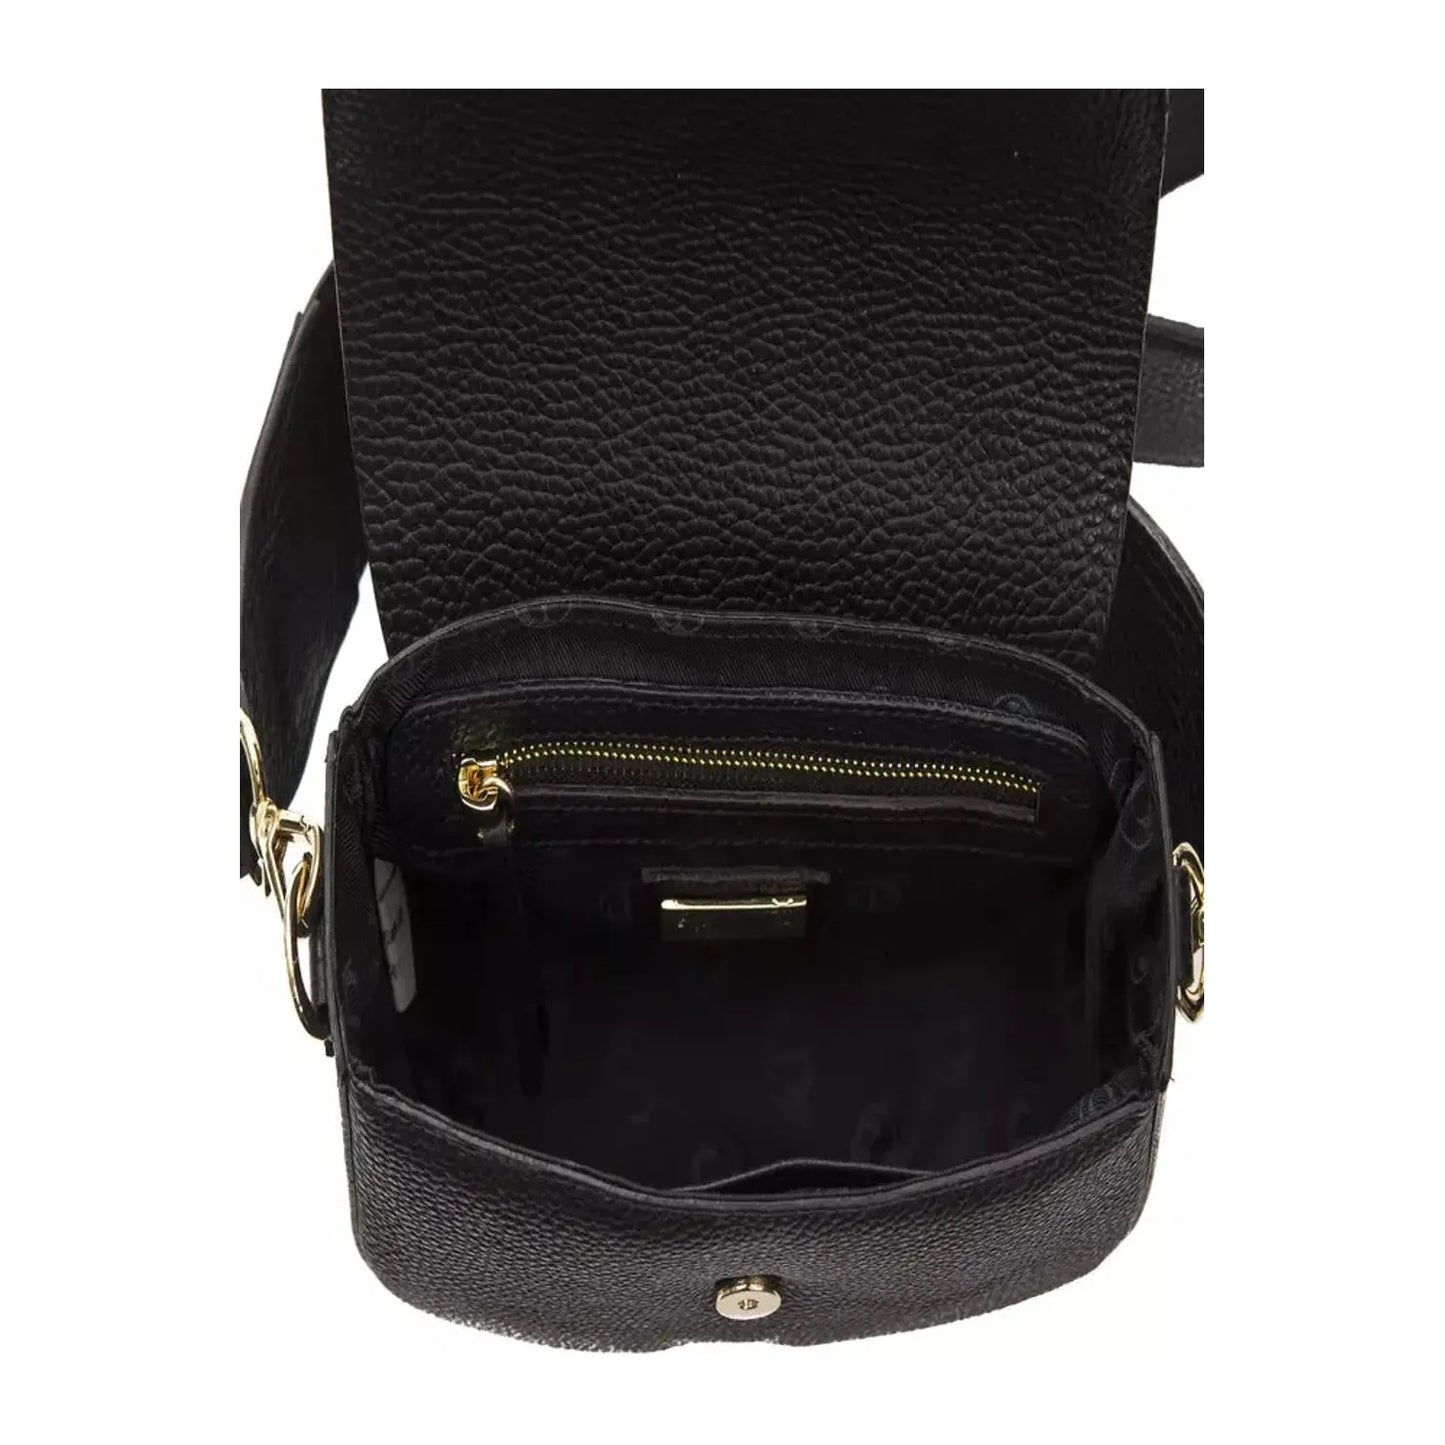 Pompei Donatella Elegant Black Leather Crossbody Bag Crossbody Bag black-leather-crossbody-bag-1 stock_product_image_5809_1171289846-23-bb1c3c3c-4f5.webp